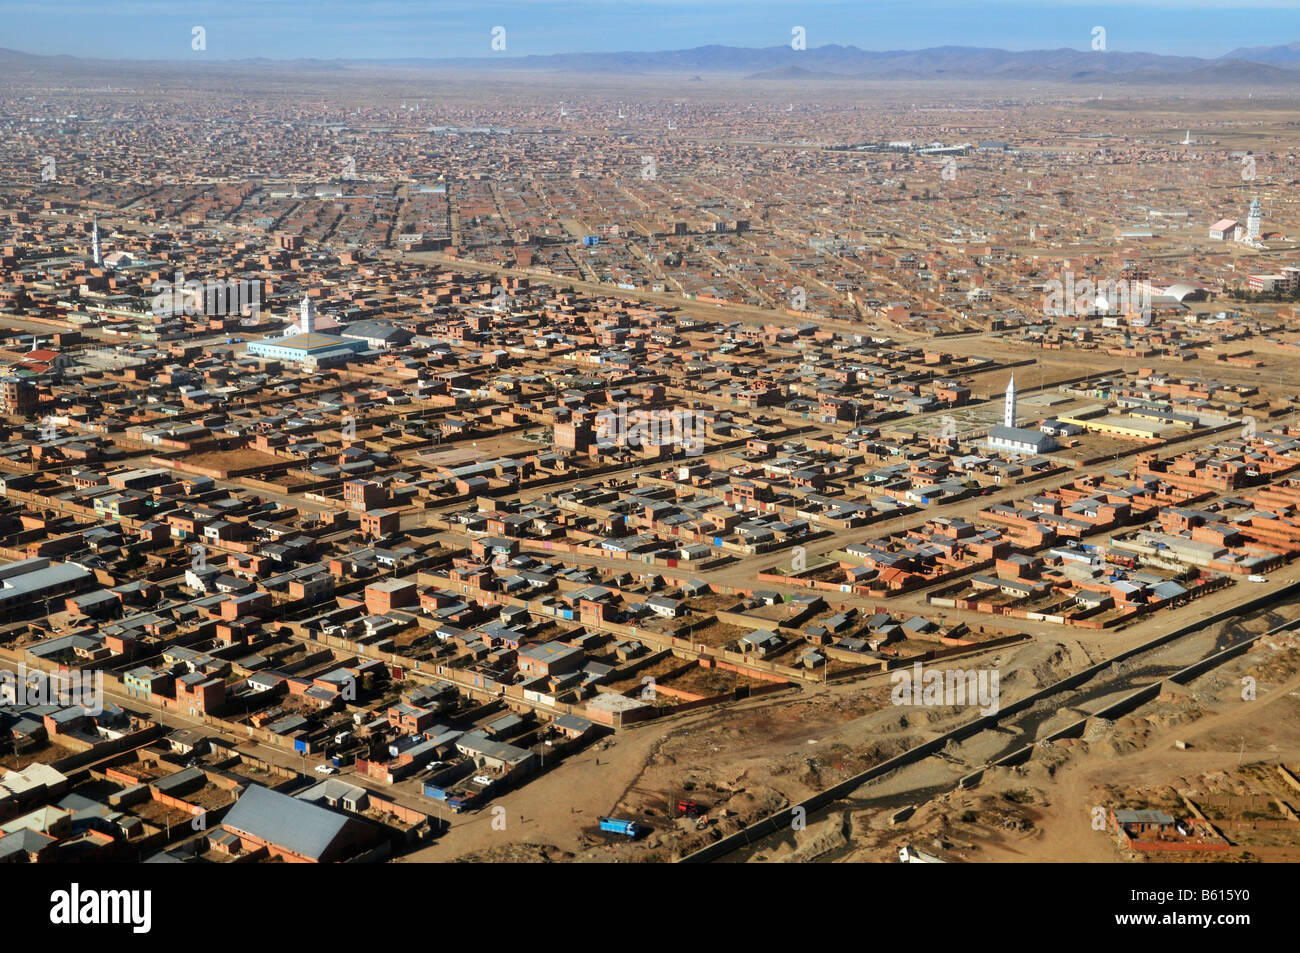 Vue aérienne sur El Alto, une ville avec plus d'un million d'habitants, La Paz, Bolivie, Amérique du Sud Banque D'Images